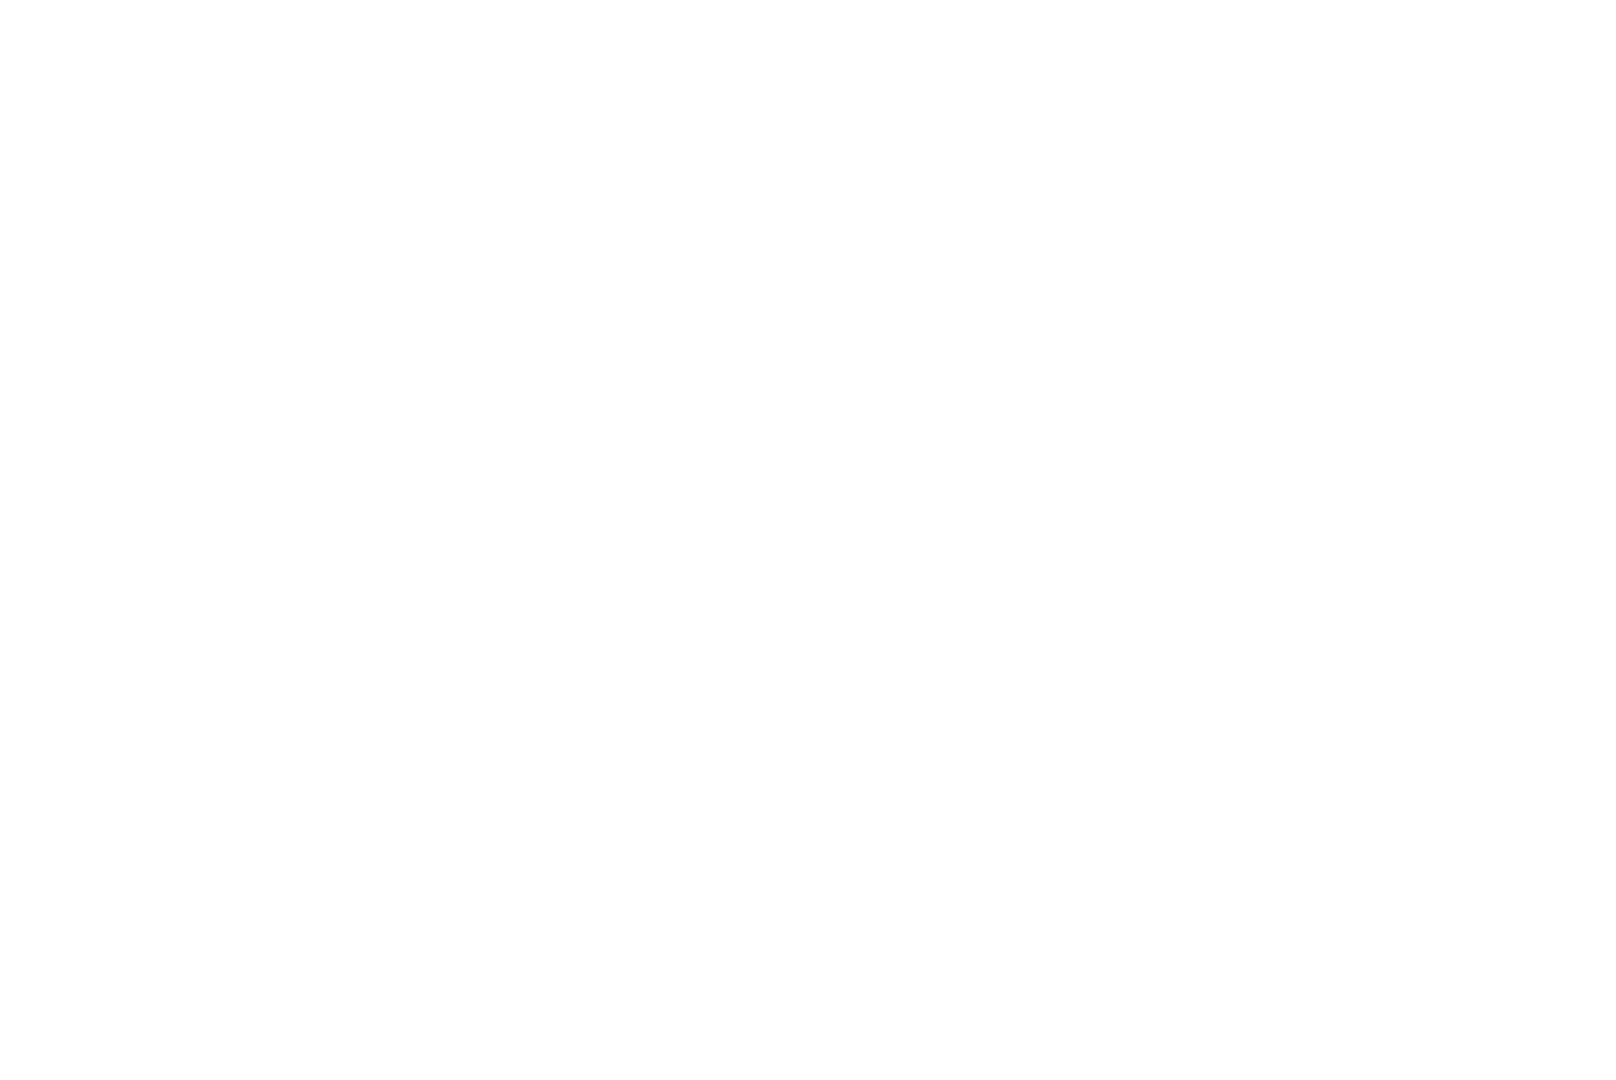 Северное сияние Полярная лира. Зима и снег в тундре, Ямал, Урал. Машкова Елена, Elena Mashkova — фотограф